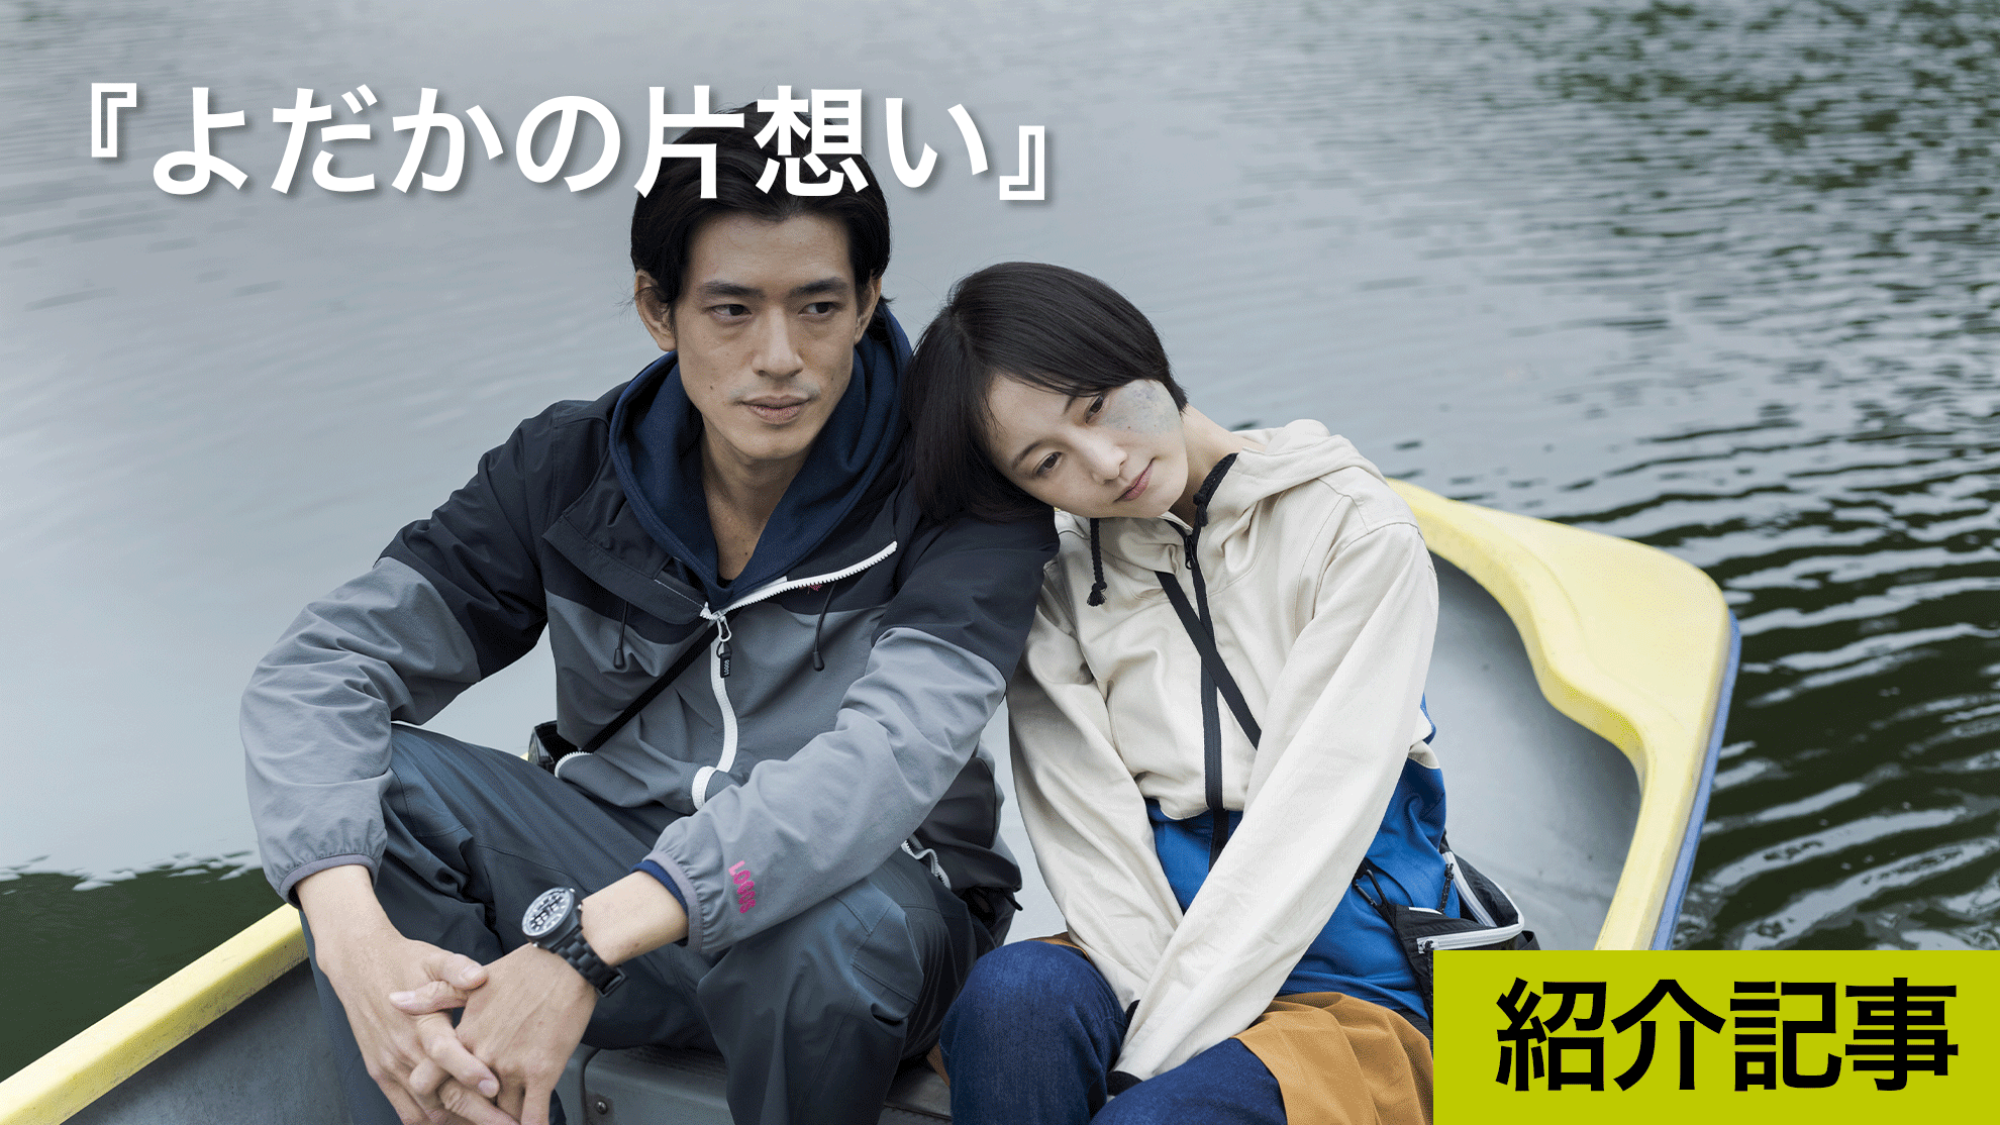 『よだかの片想い』主演松井玲奈の島本理生の小説を映画化したいという想いが募った作品